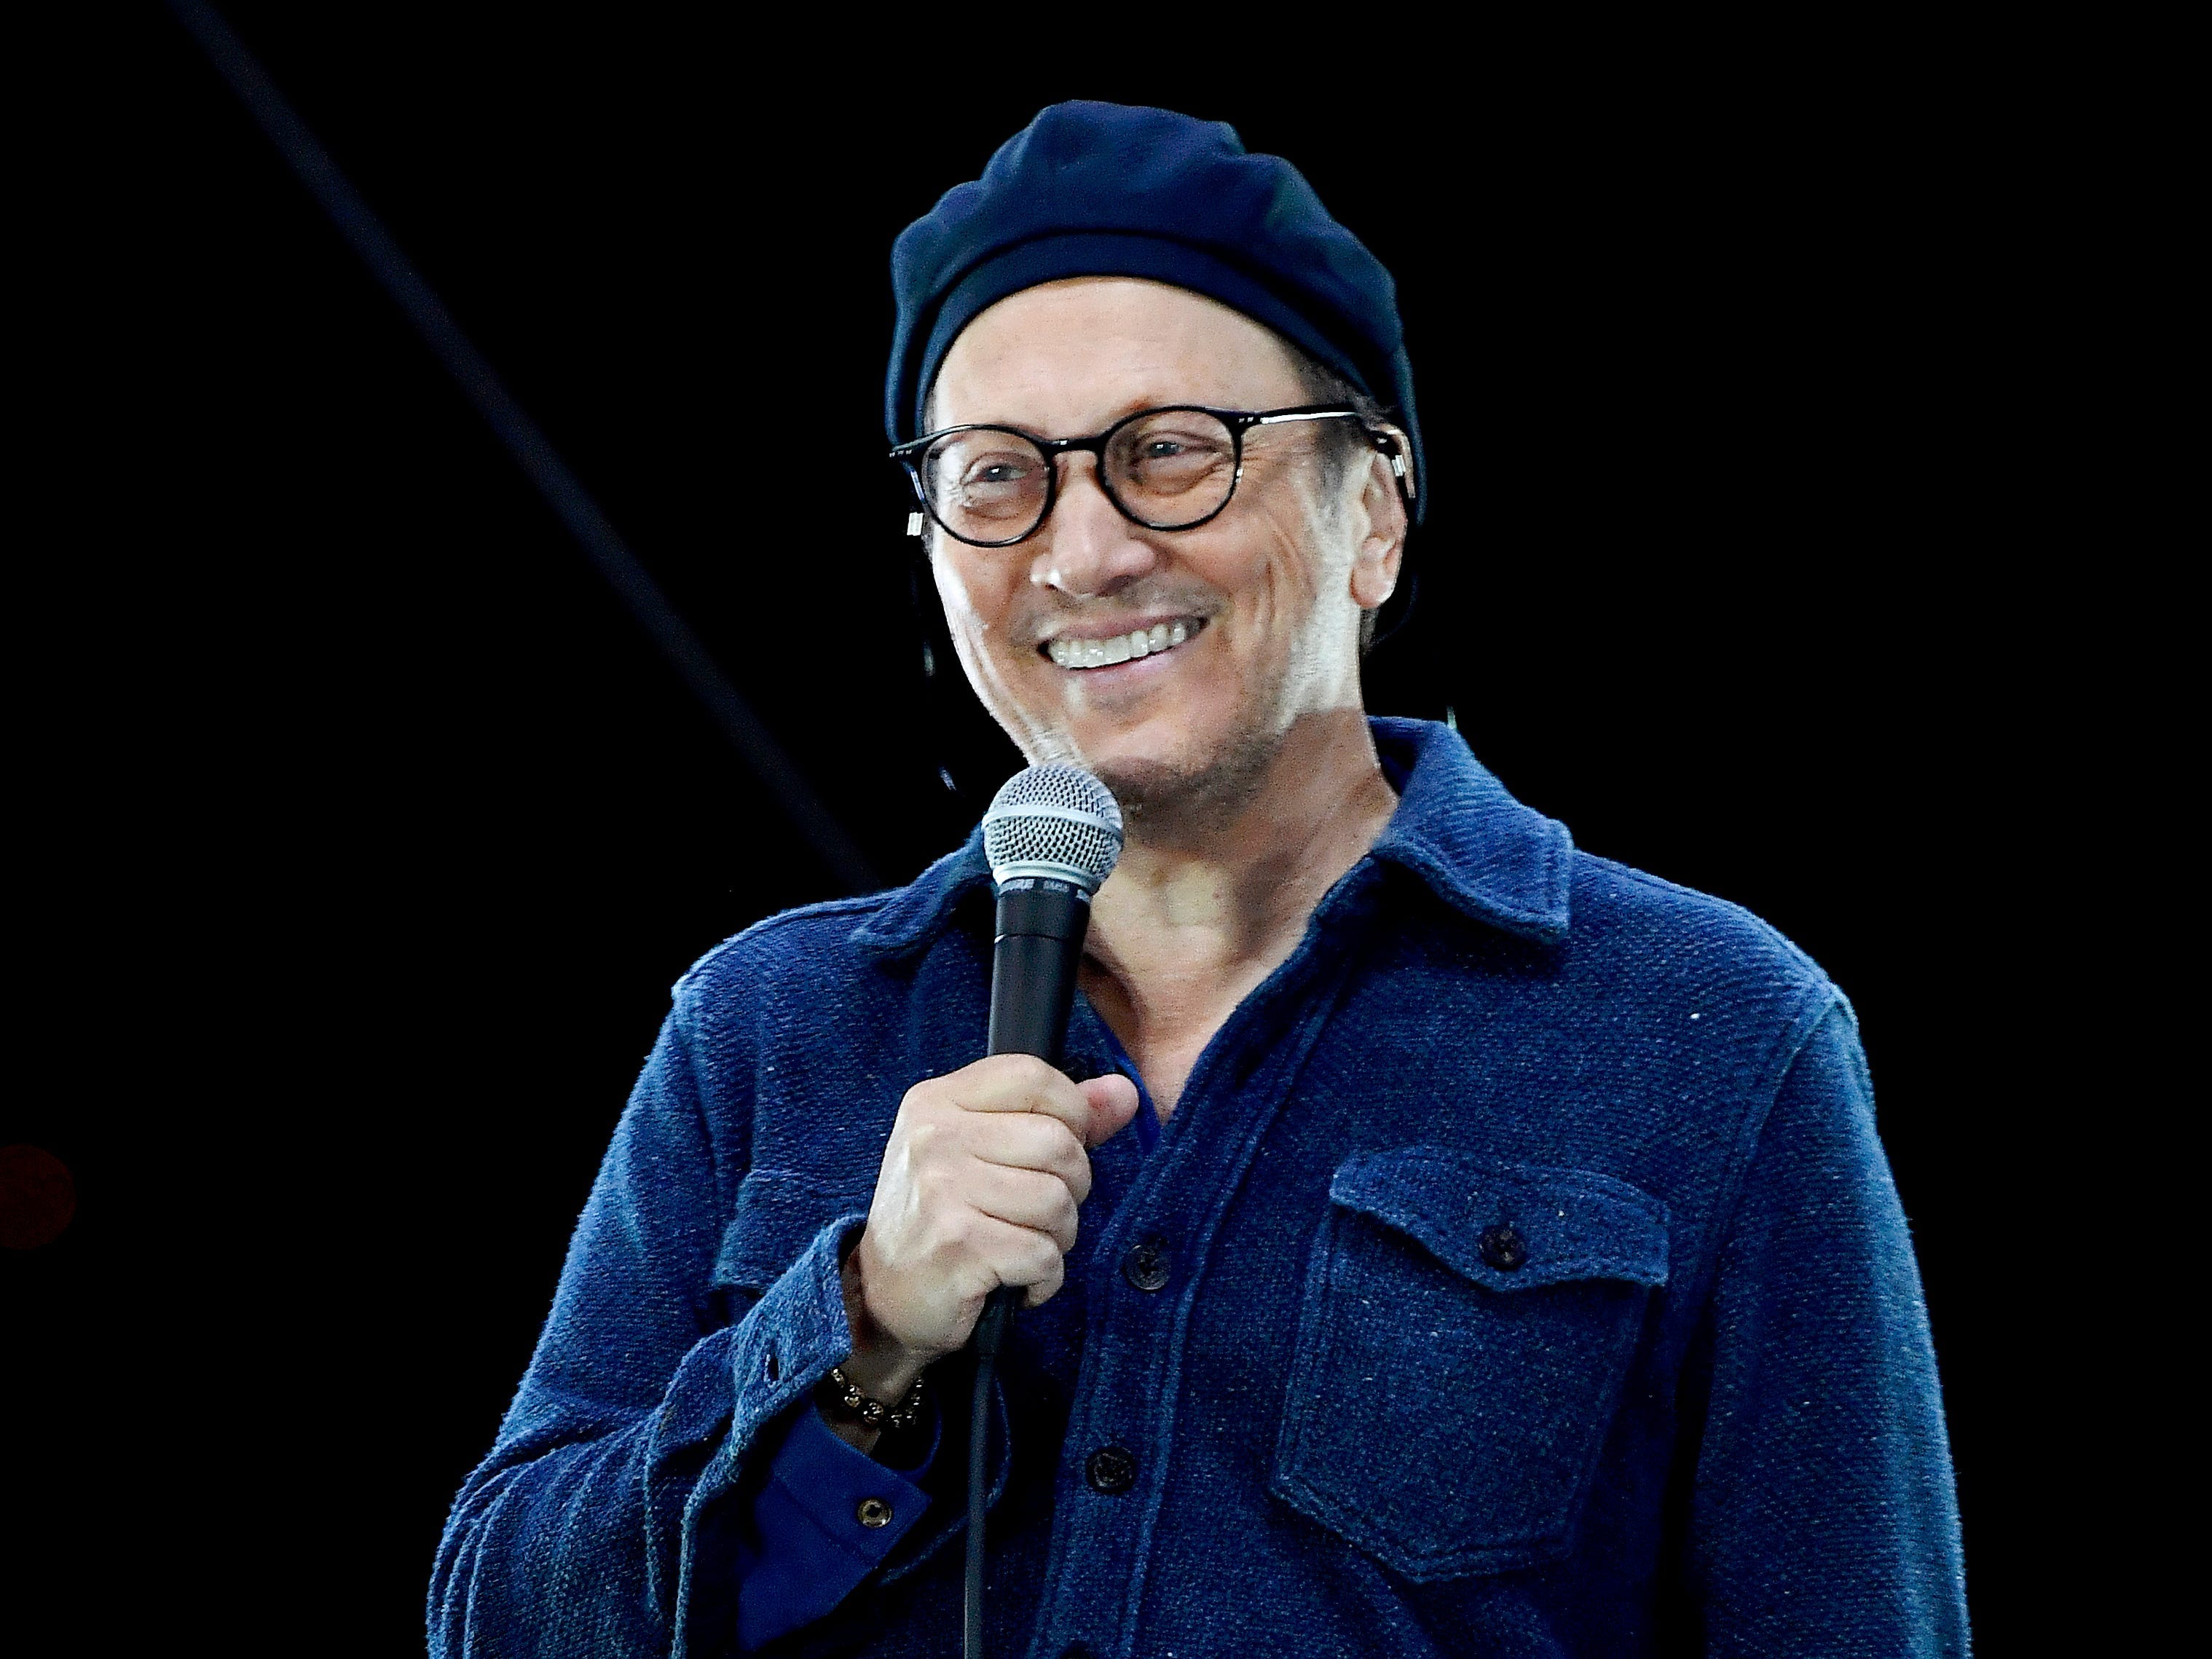 rob schneider trägt ein blaues hemd und einen hut, lächelt auf der bühne und hält ein mikrofon bei der komödie in your cars drive in concert im Jahr 2020